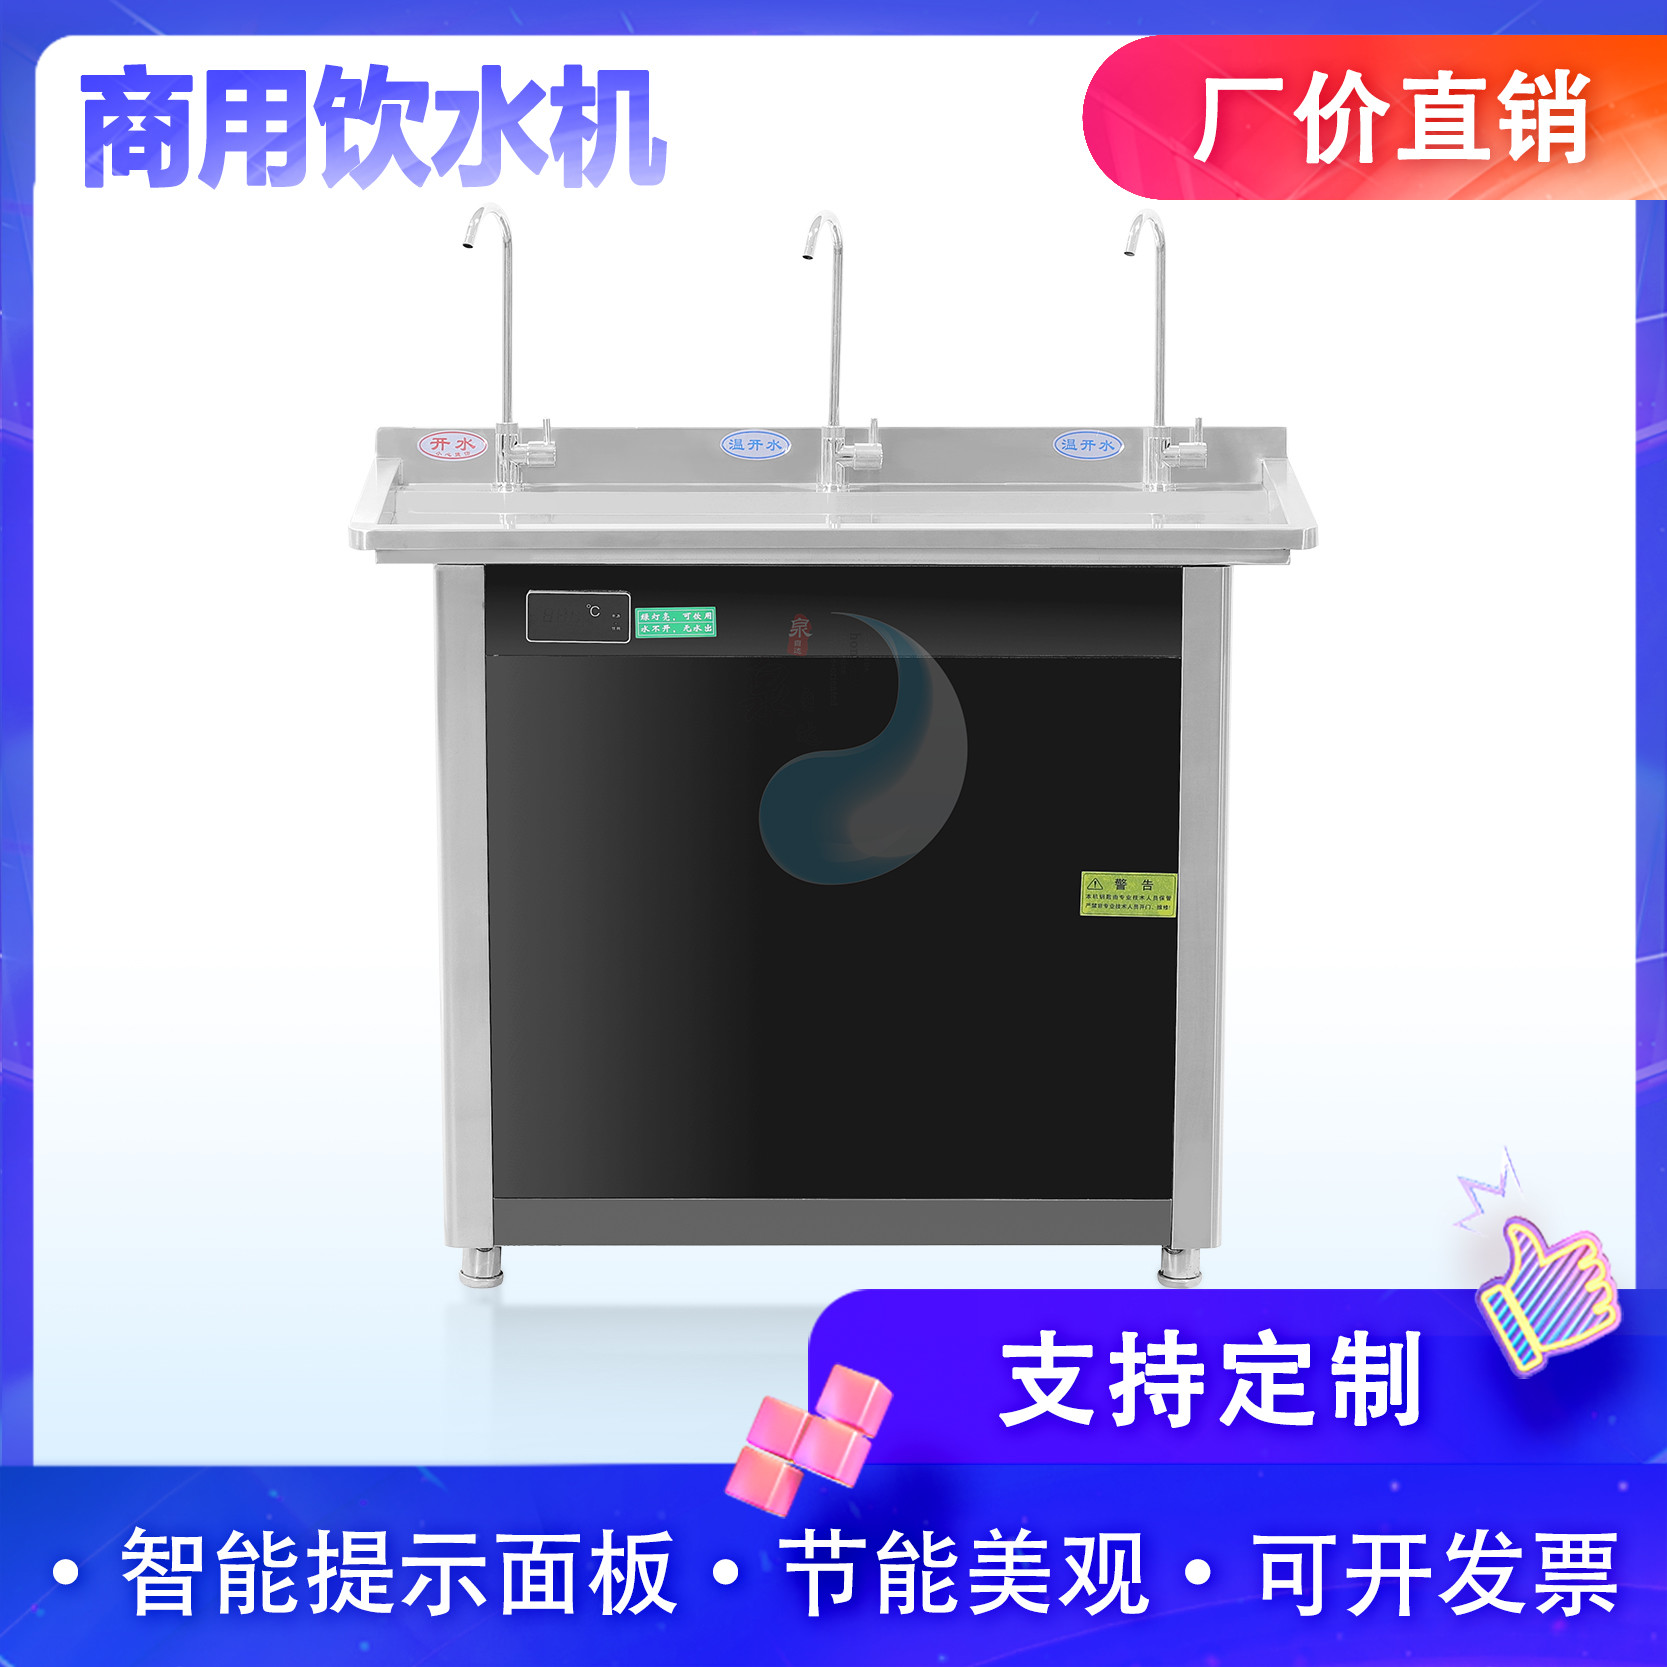 泉自达QJ-3C 温热饮水机不锈钢饮水机